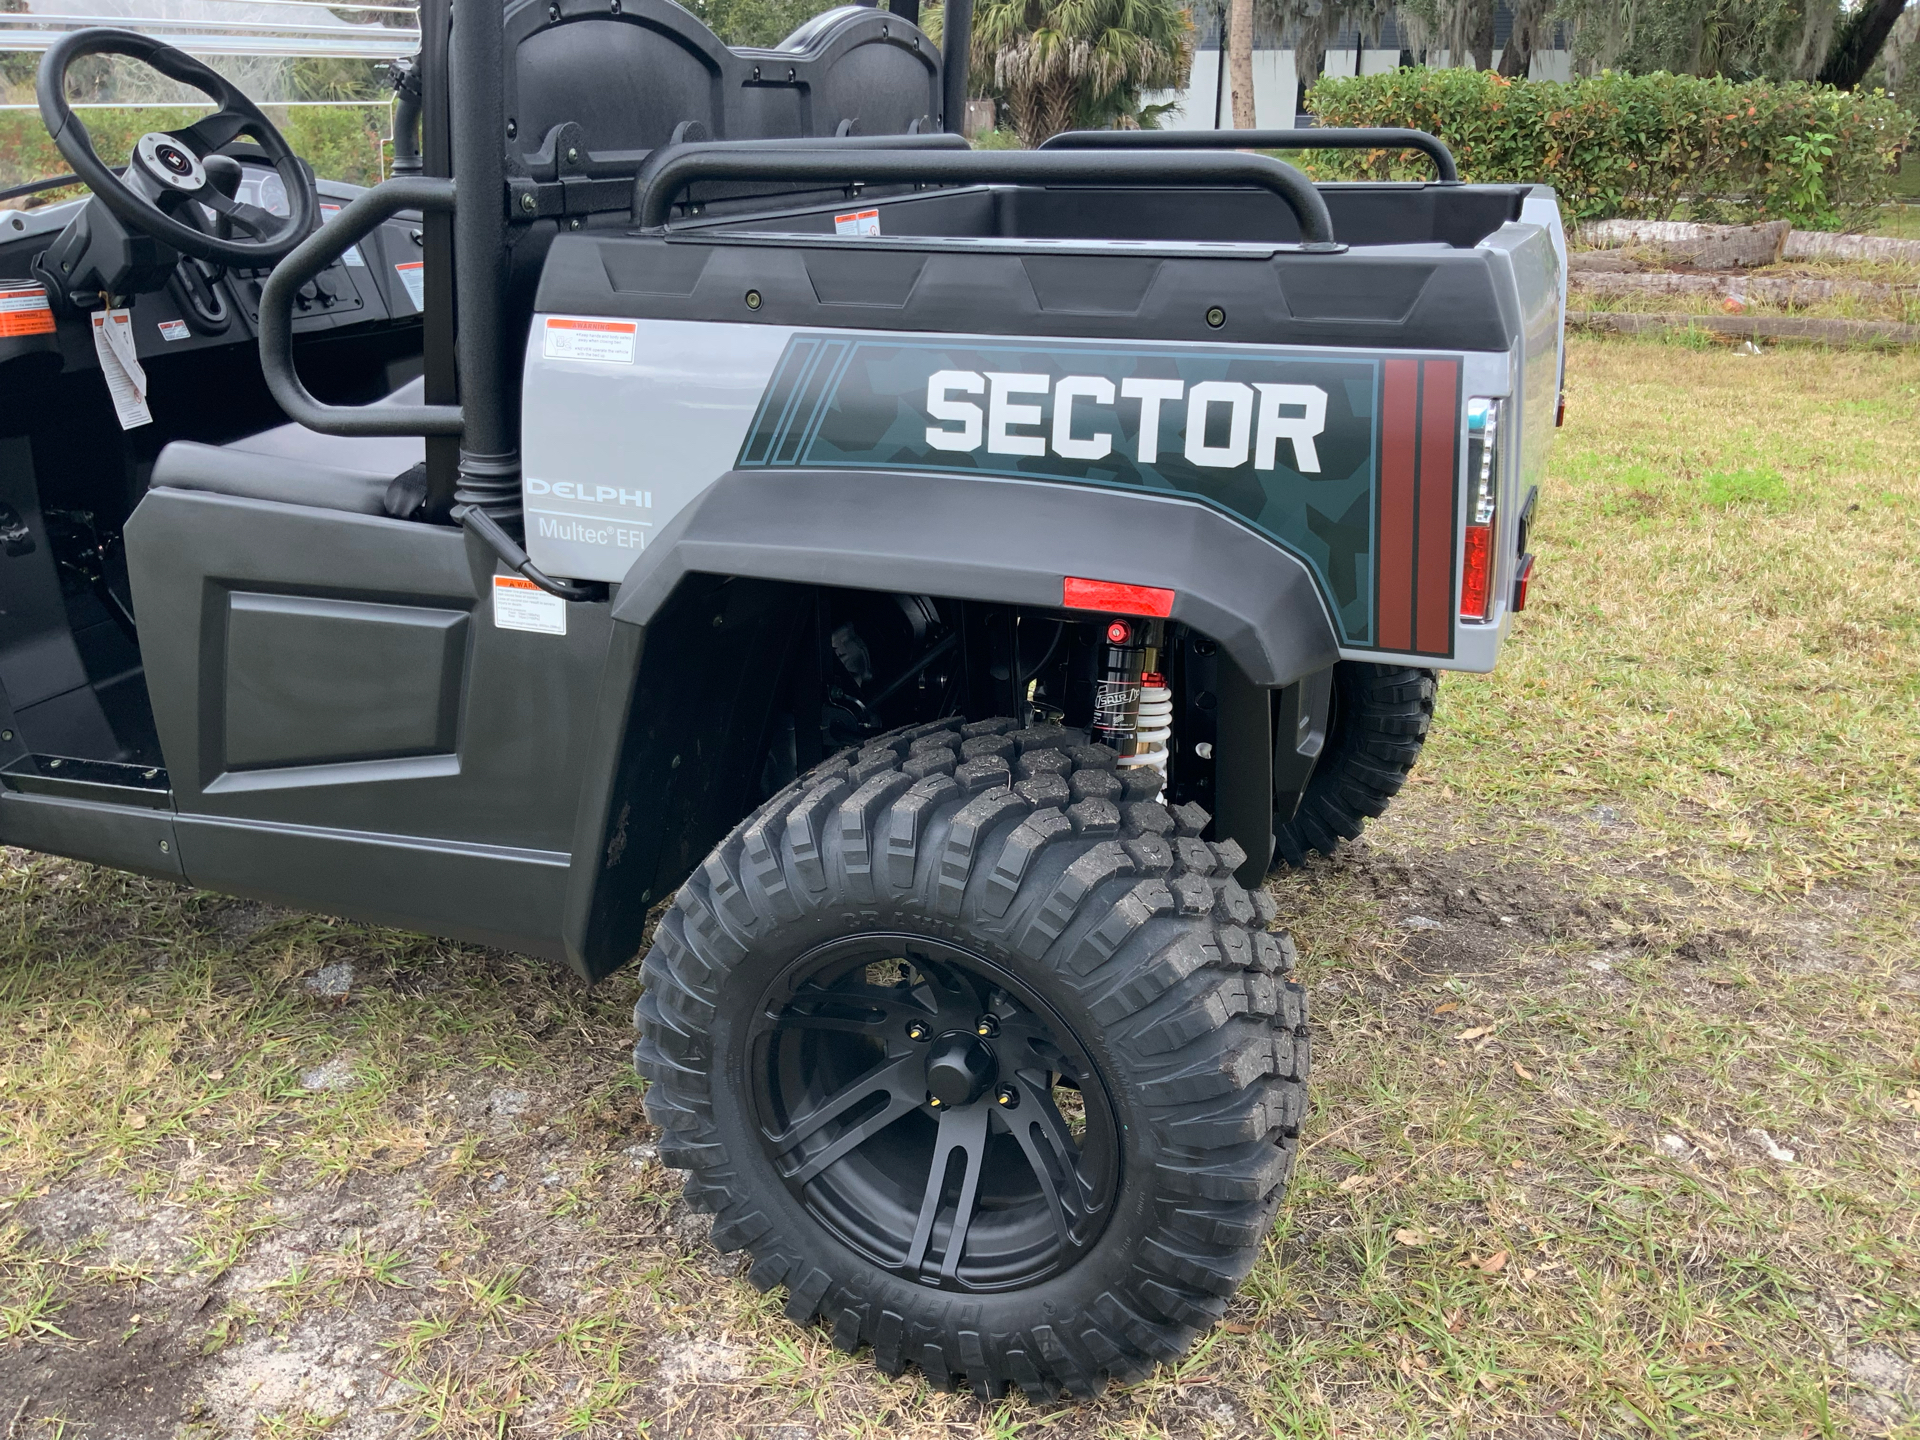 2021 Hisun Sector 450 in Sanford, Florida - Photo 11